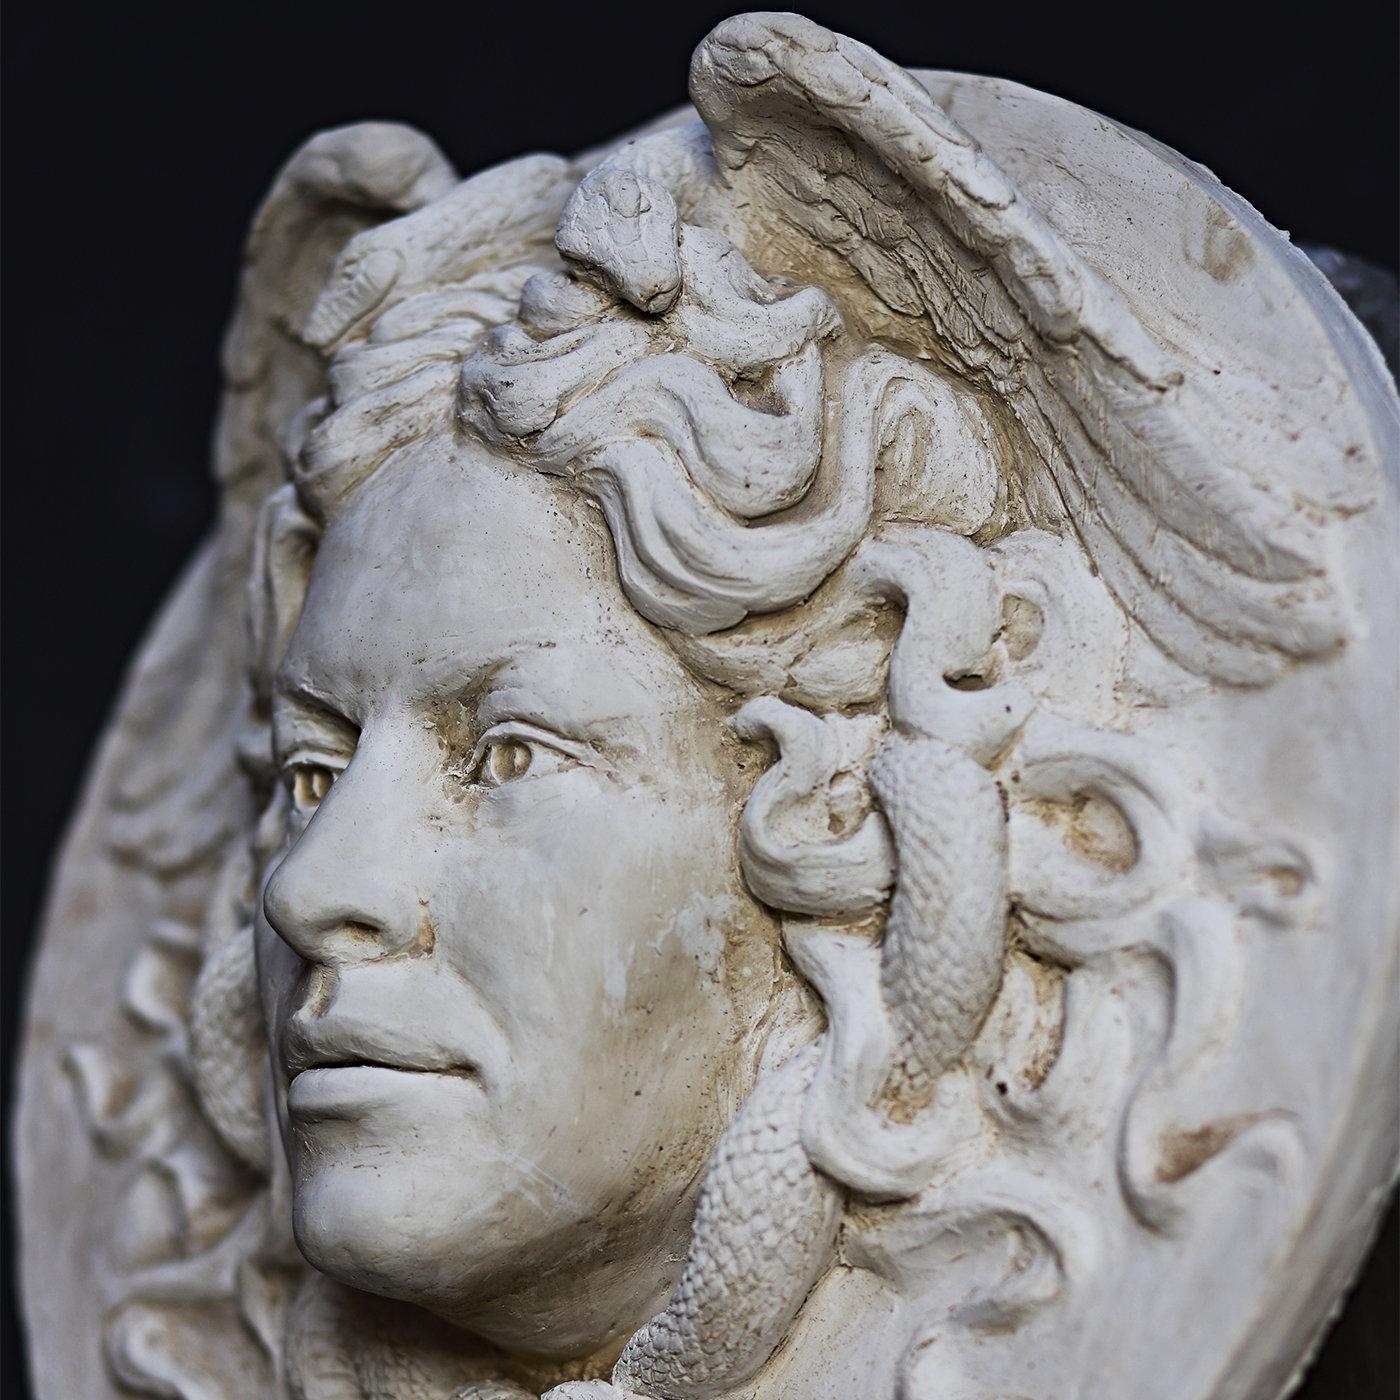 Œuvre d'art extraordinaire des sculpteurs Romanelli, ce bas-relief s'inspire de la célèbre Medusa Rondanini, copie en marbre hellénistique de la tête de la déesse Méduse. Absolument stupéfiante dans ses traits parfaits et archétypaux, la figure